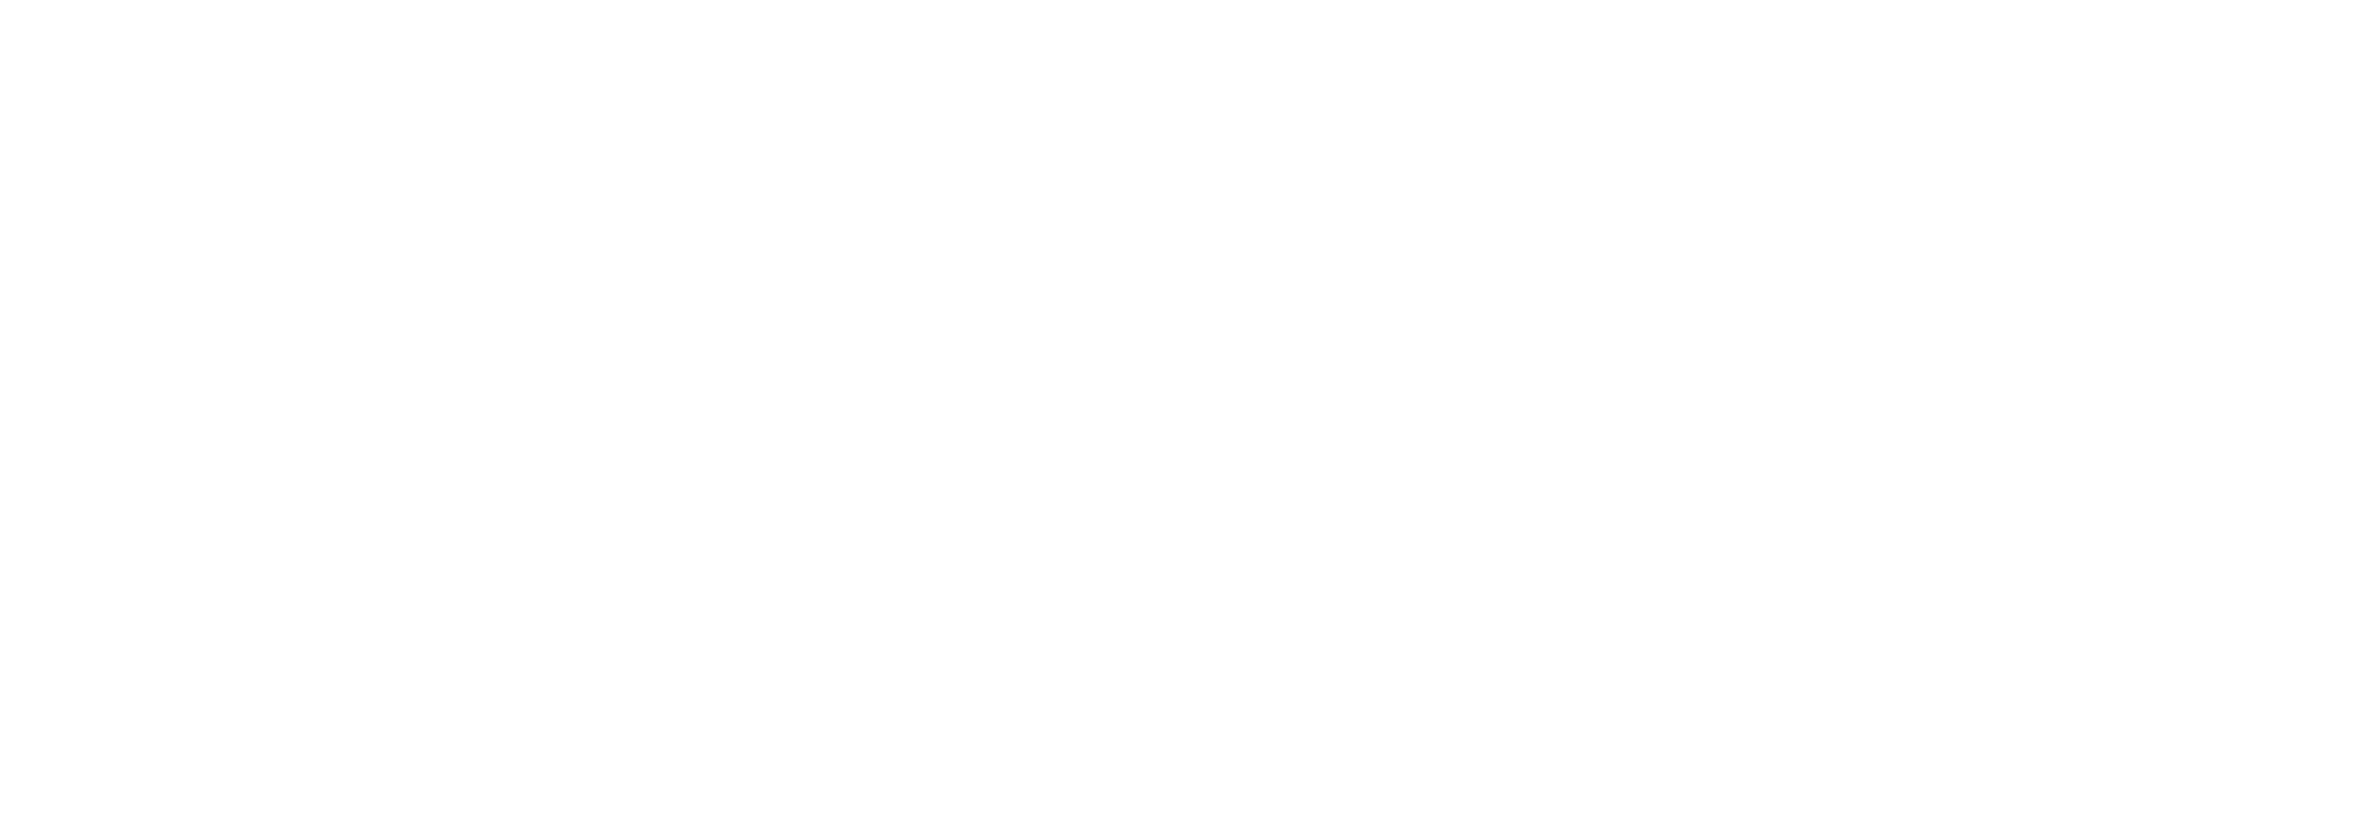 Kailo logo whitew